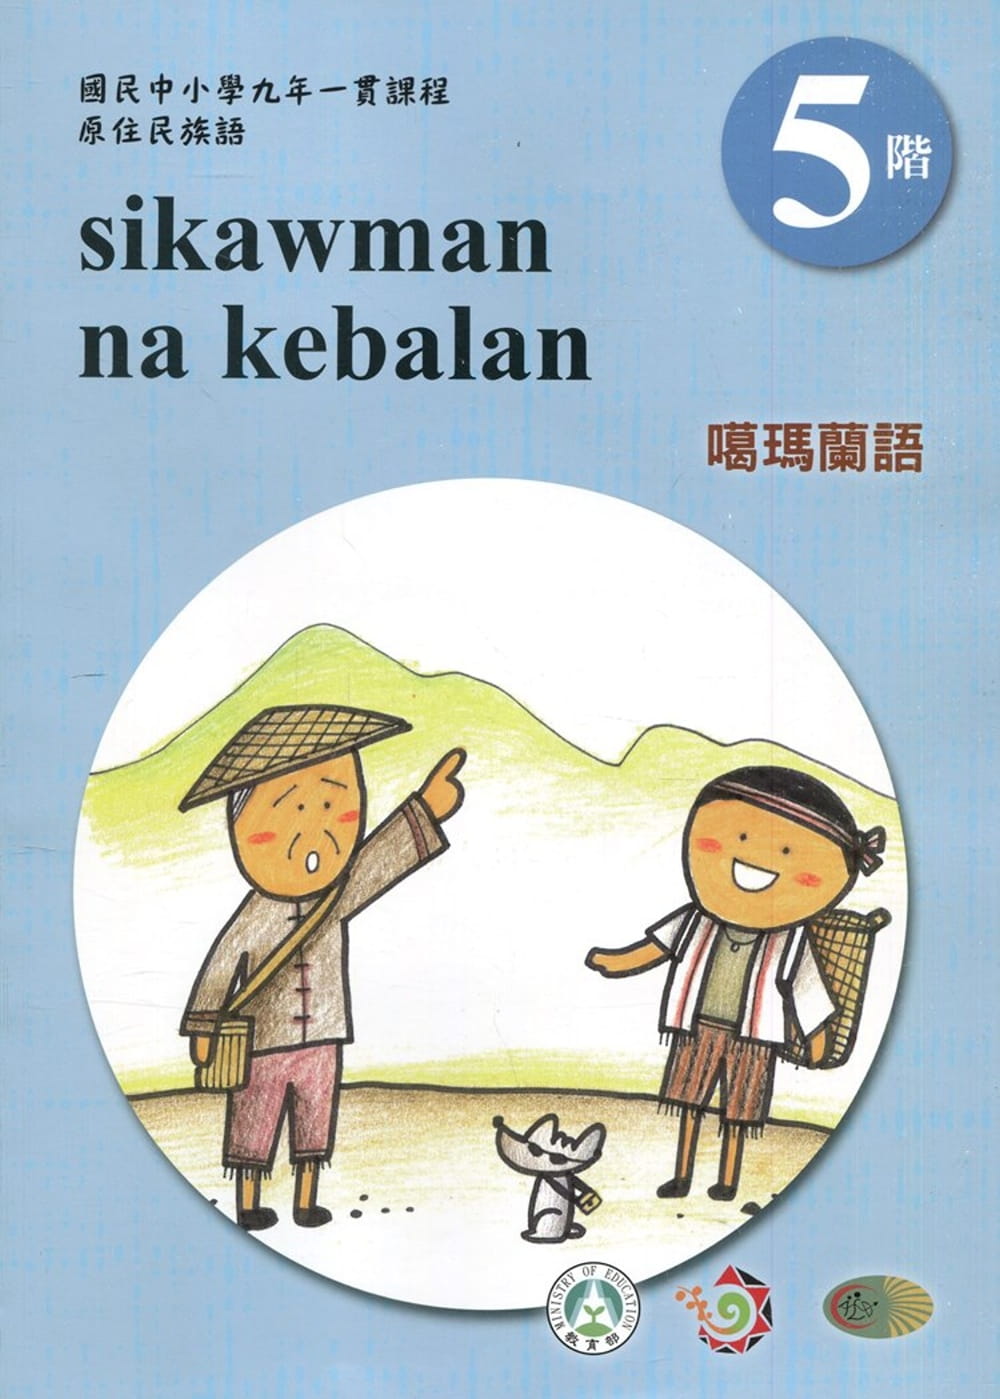 噶瑪蘭語學習手冊第5階(附光碟)3版2刷